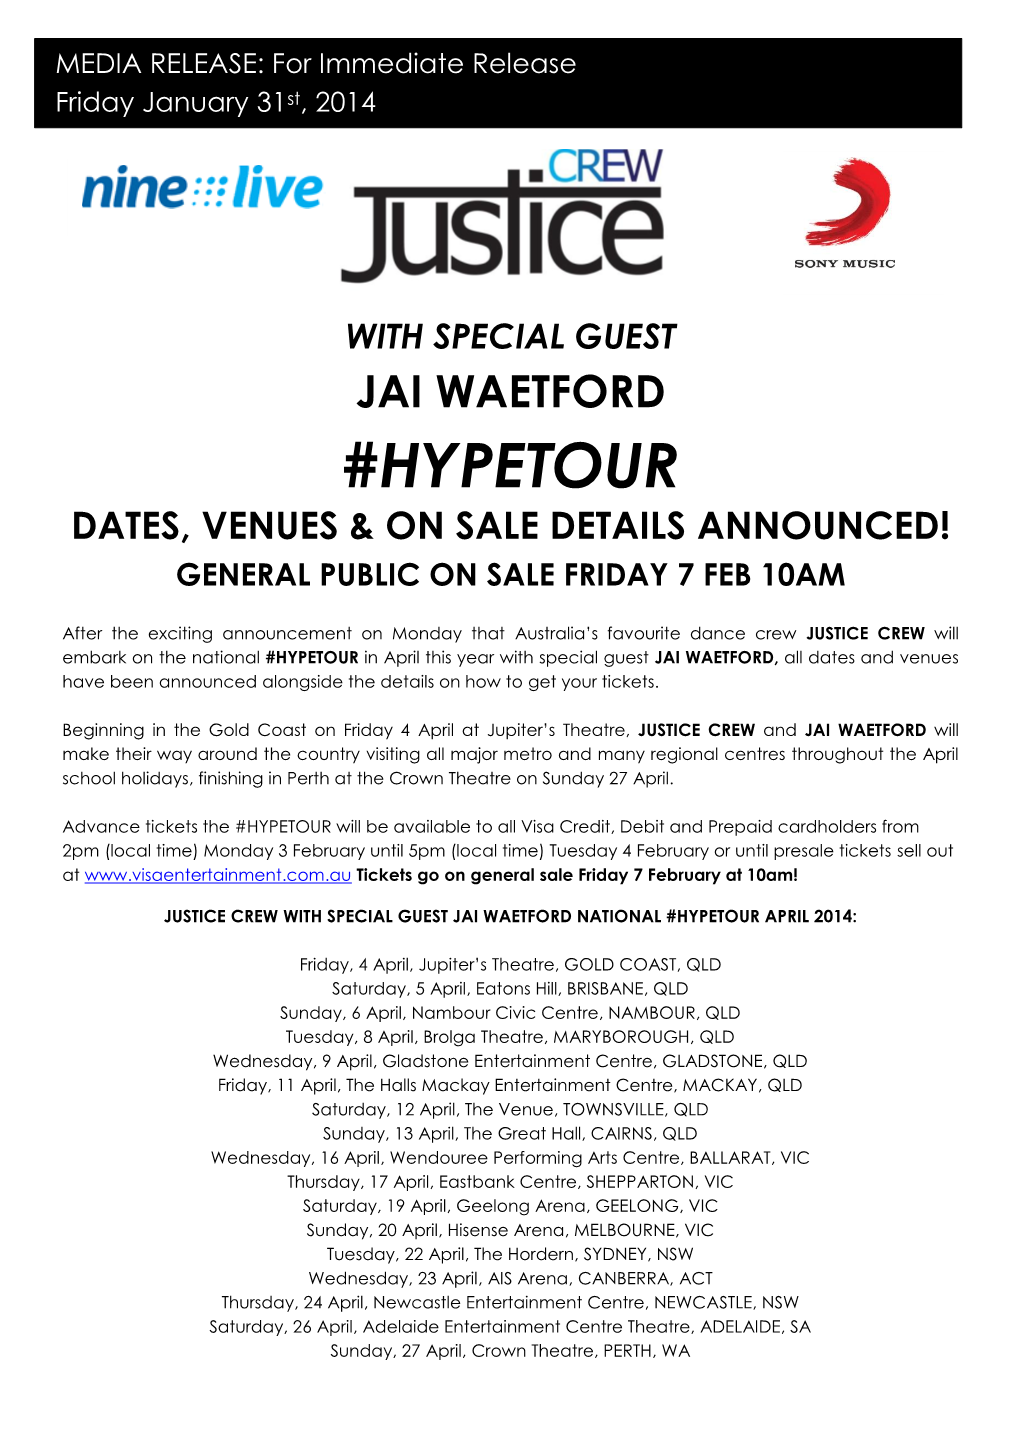 Hypetour Dates, Venues & on Sale Details Announced! General Public on Sale Friday 7 Feb 10Am